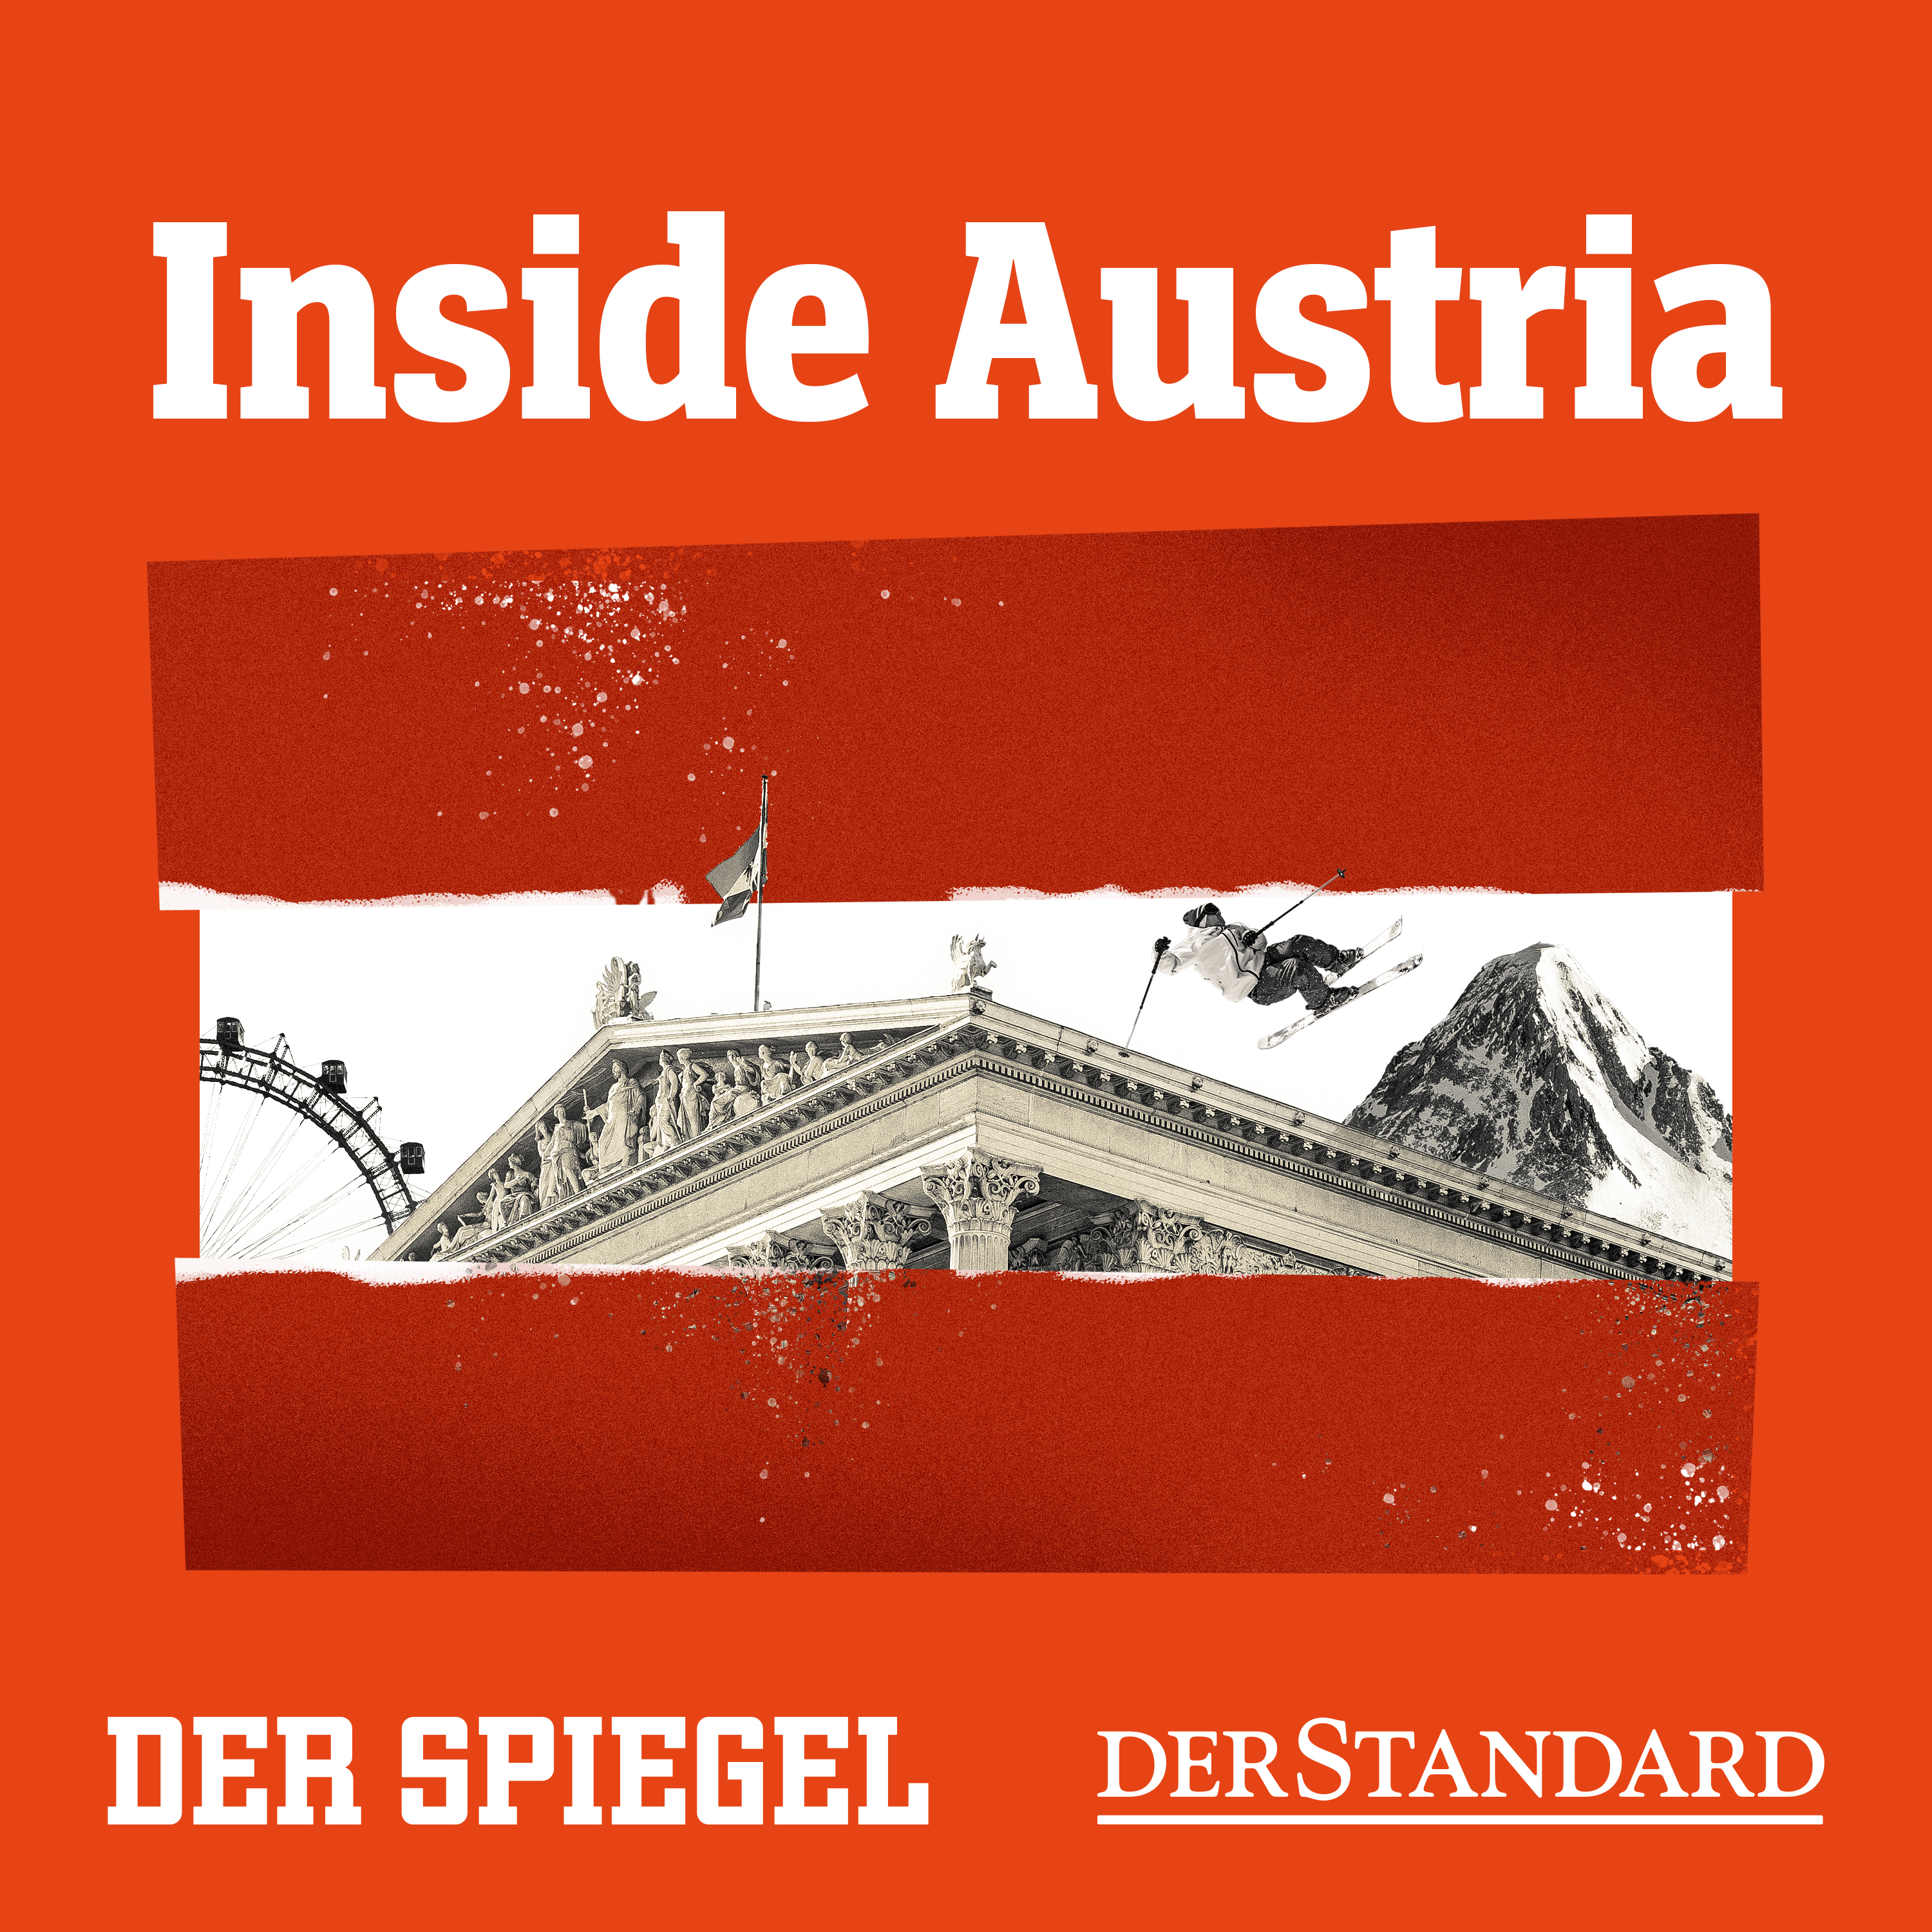 Regieren die Rechtspopulisten bald Österreich?